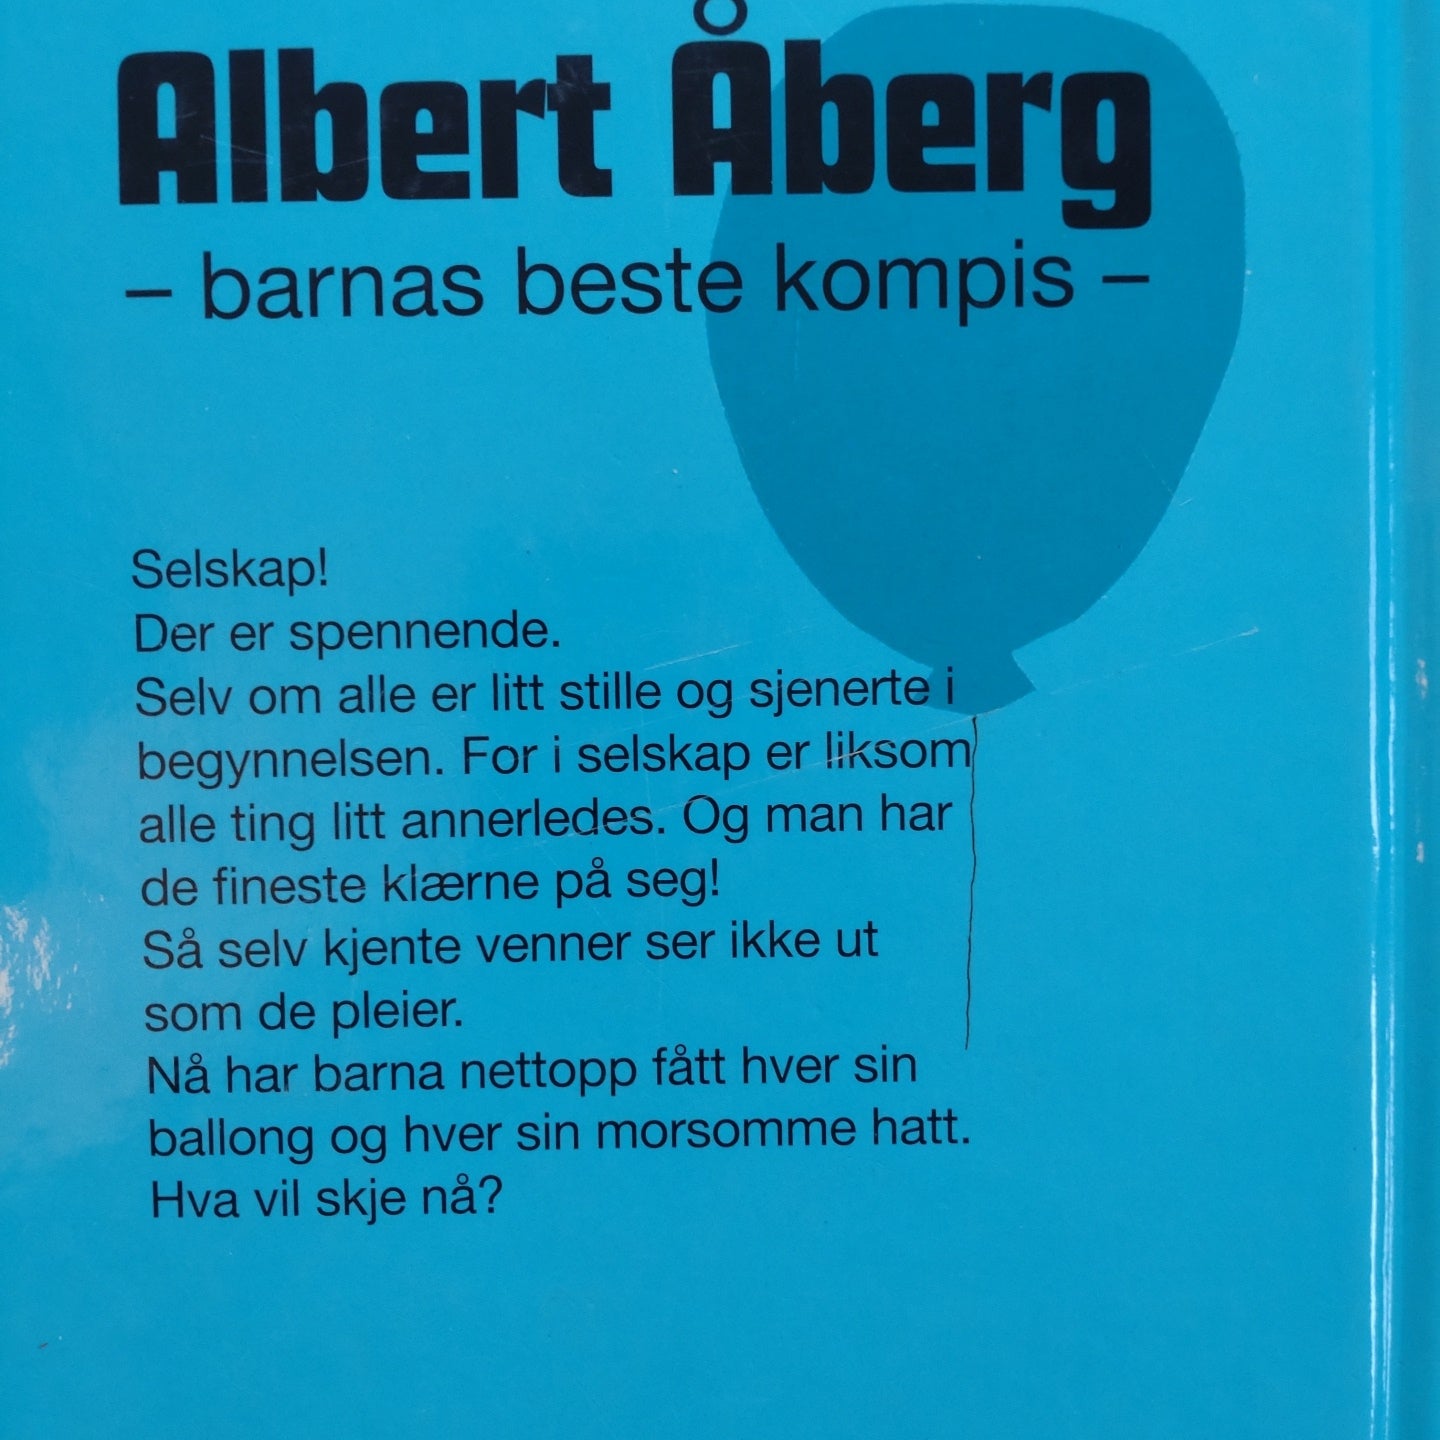 Bergström, Gunilla: Fest hos Albert Åberg